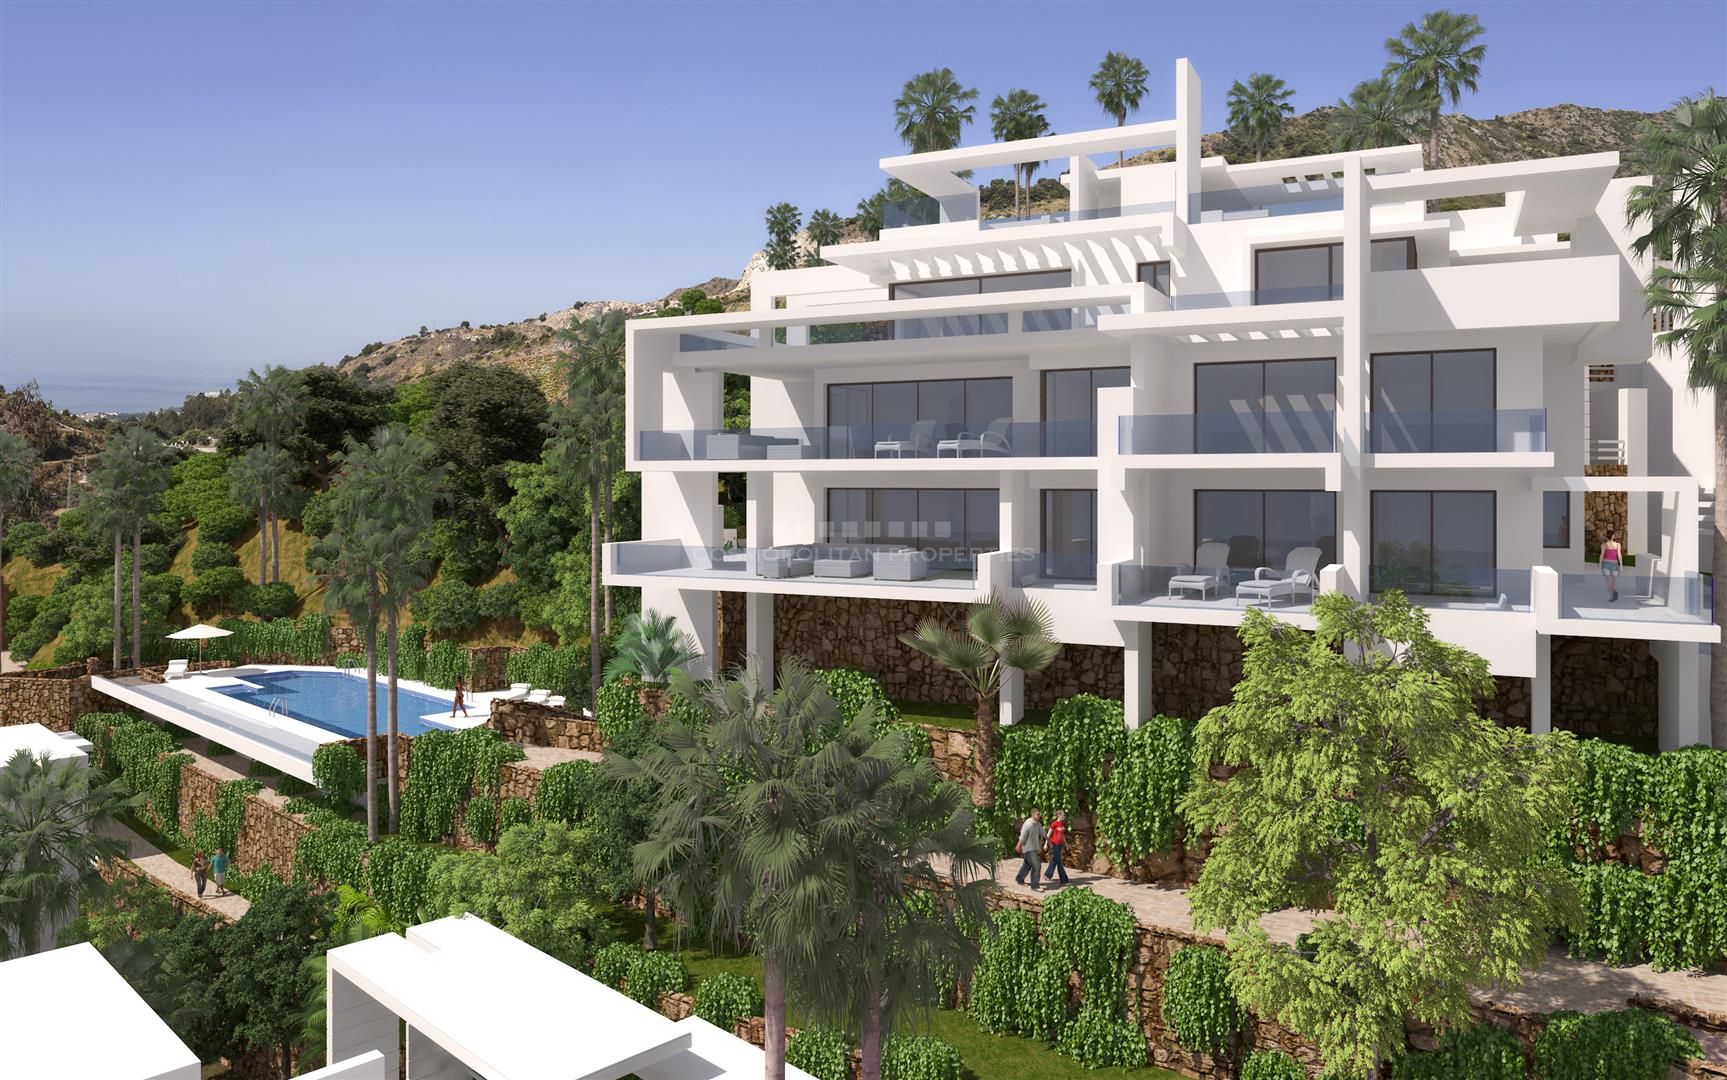 Lujoso piso nuevo a estrenar en exclusiva urbanización en la parte norte de Marbella